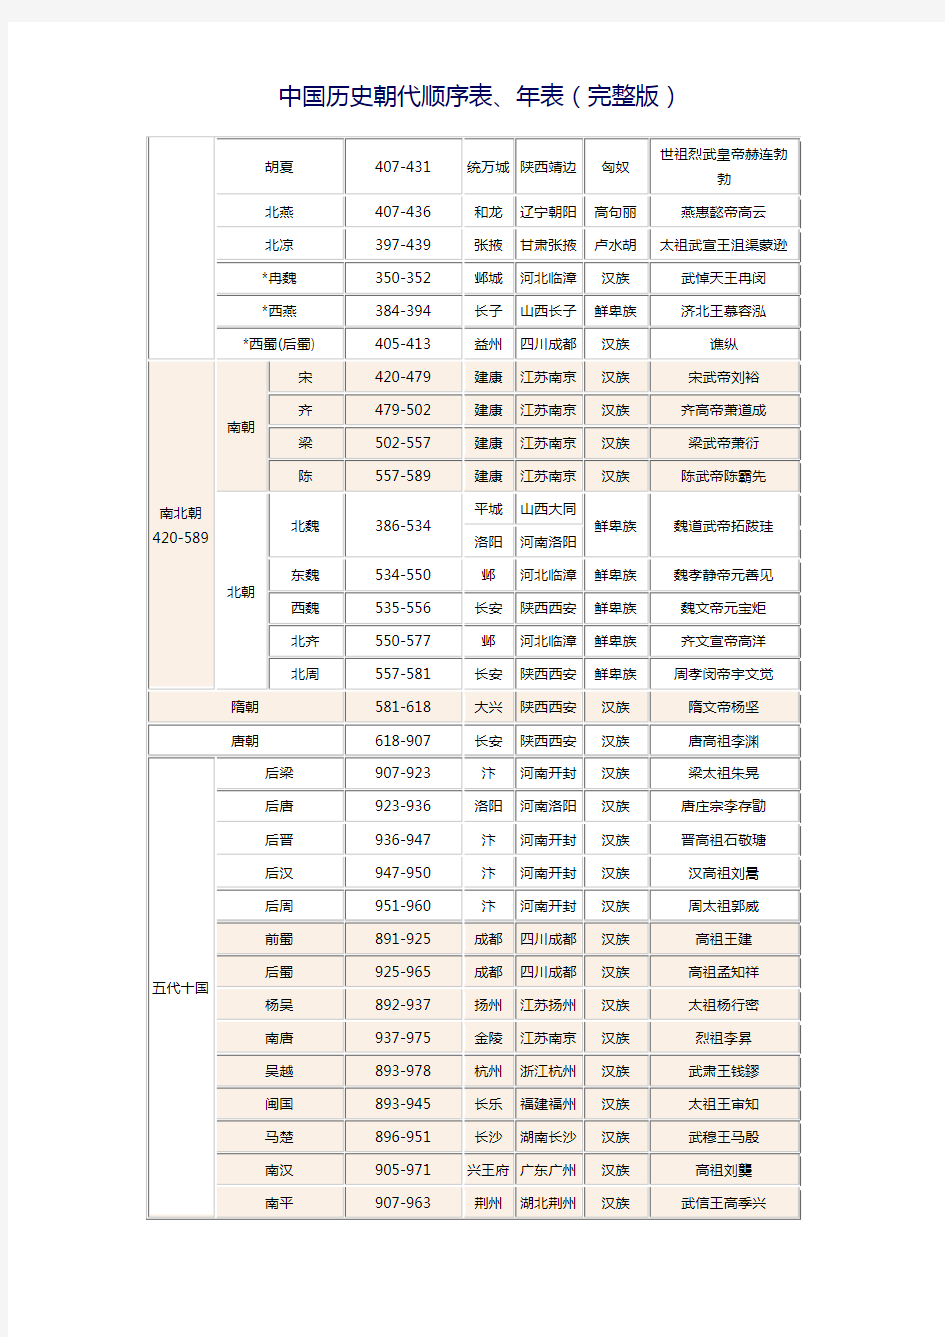 中国历史朝代顺序表、年表(完整版)